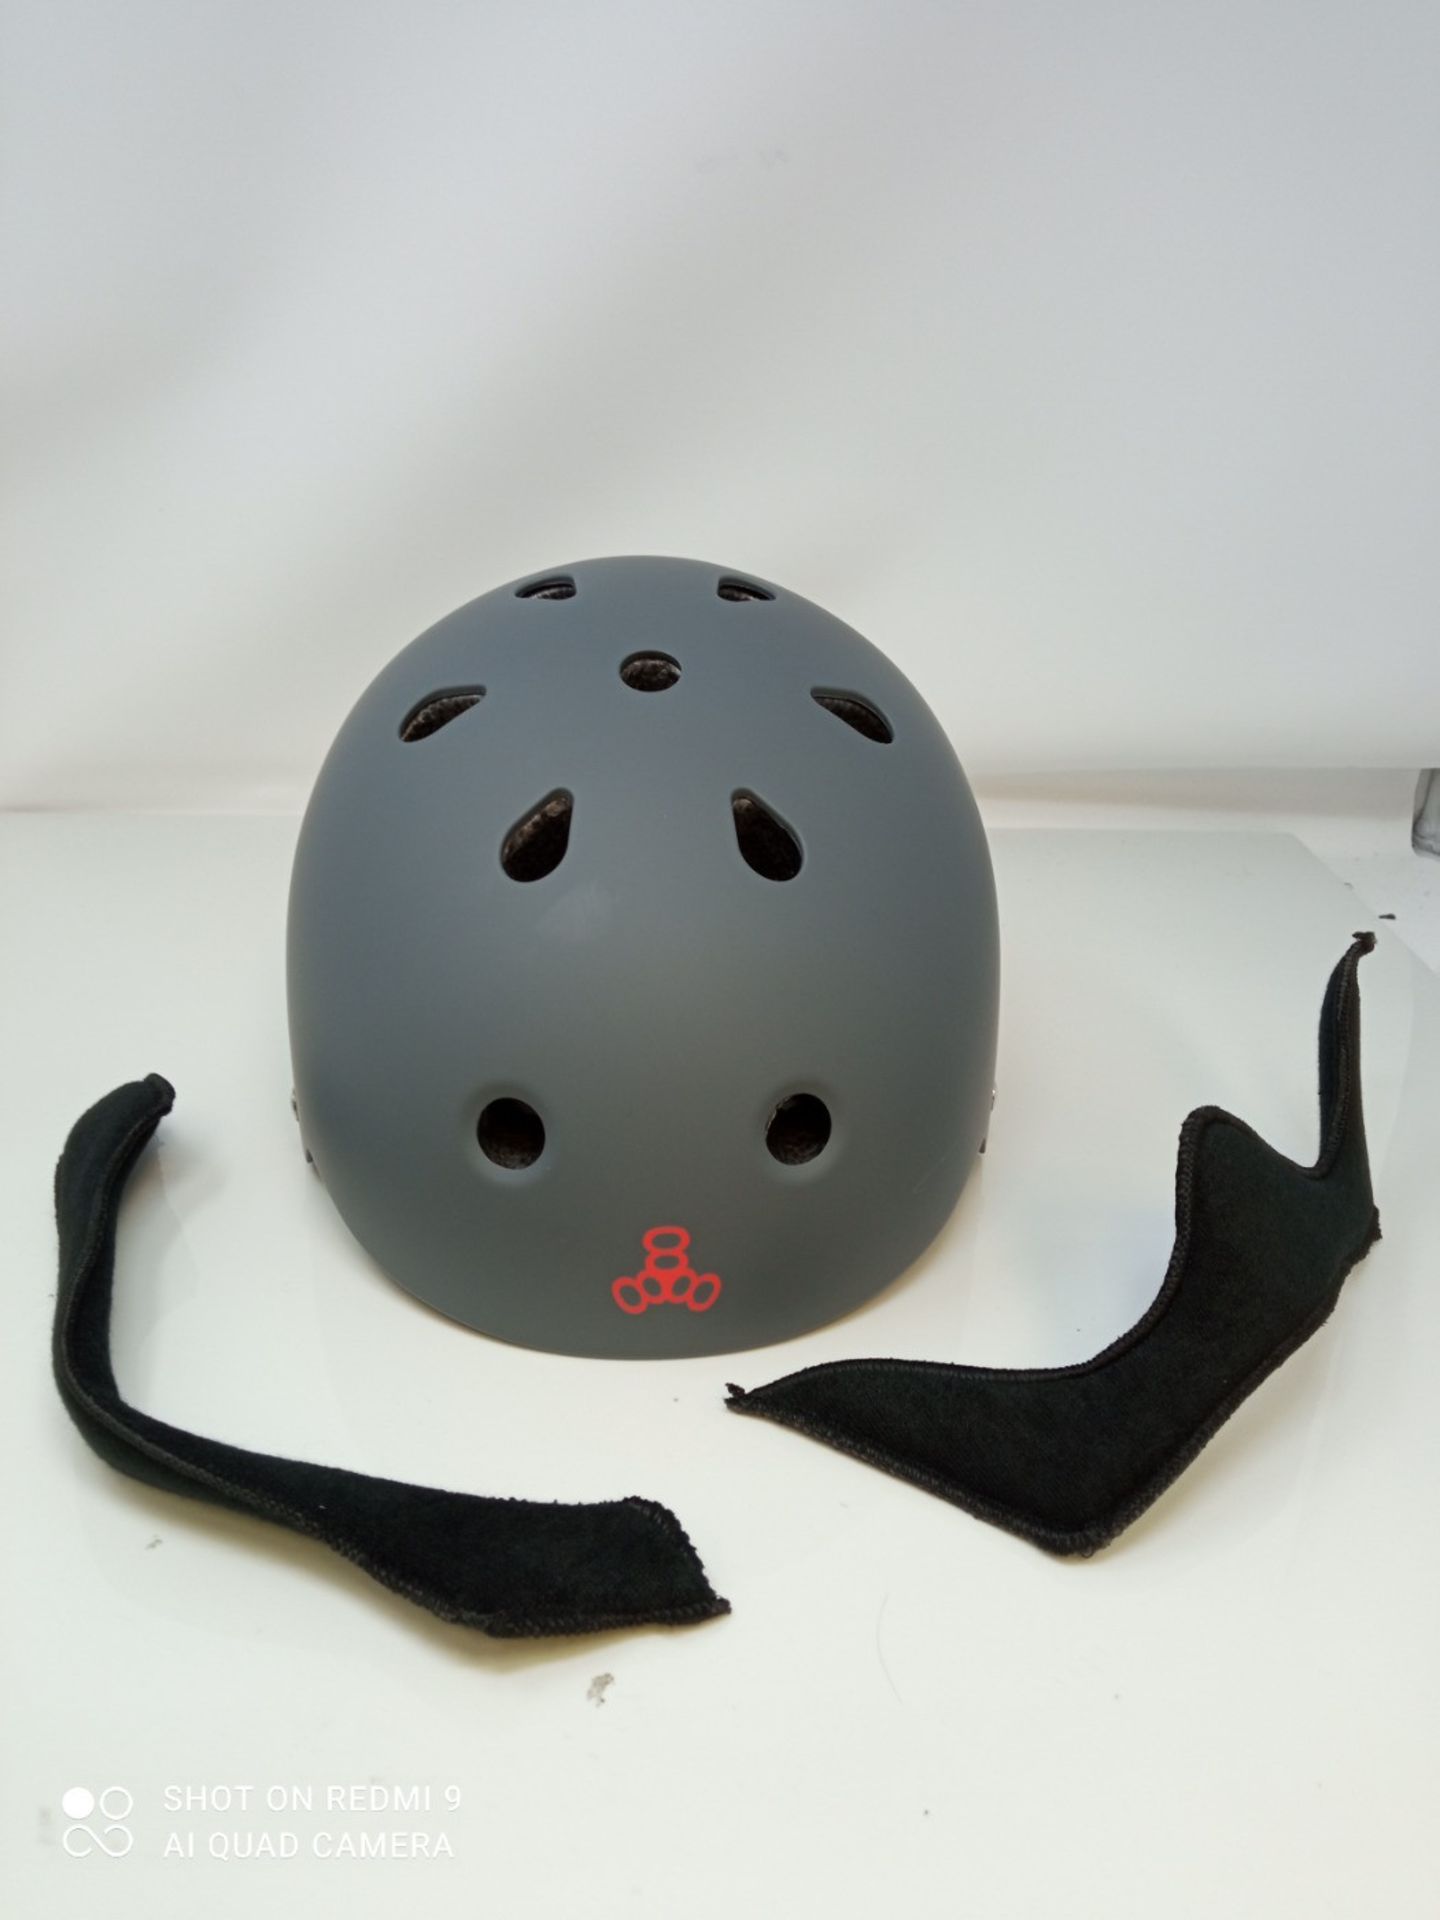 Triple 8 Brainsaver EPS Unisex Rubber Helmet - Image 2 of 3